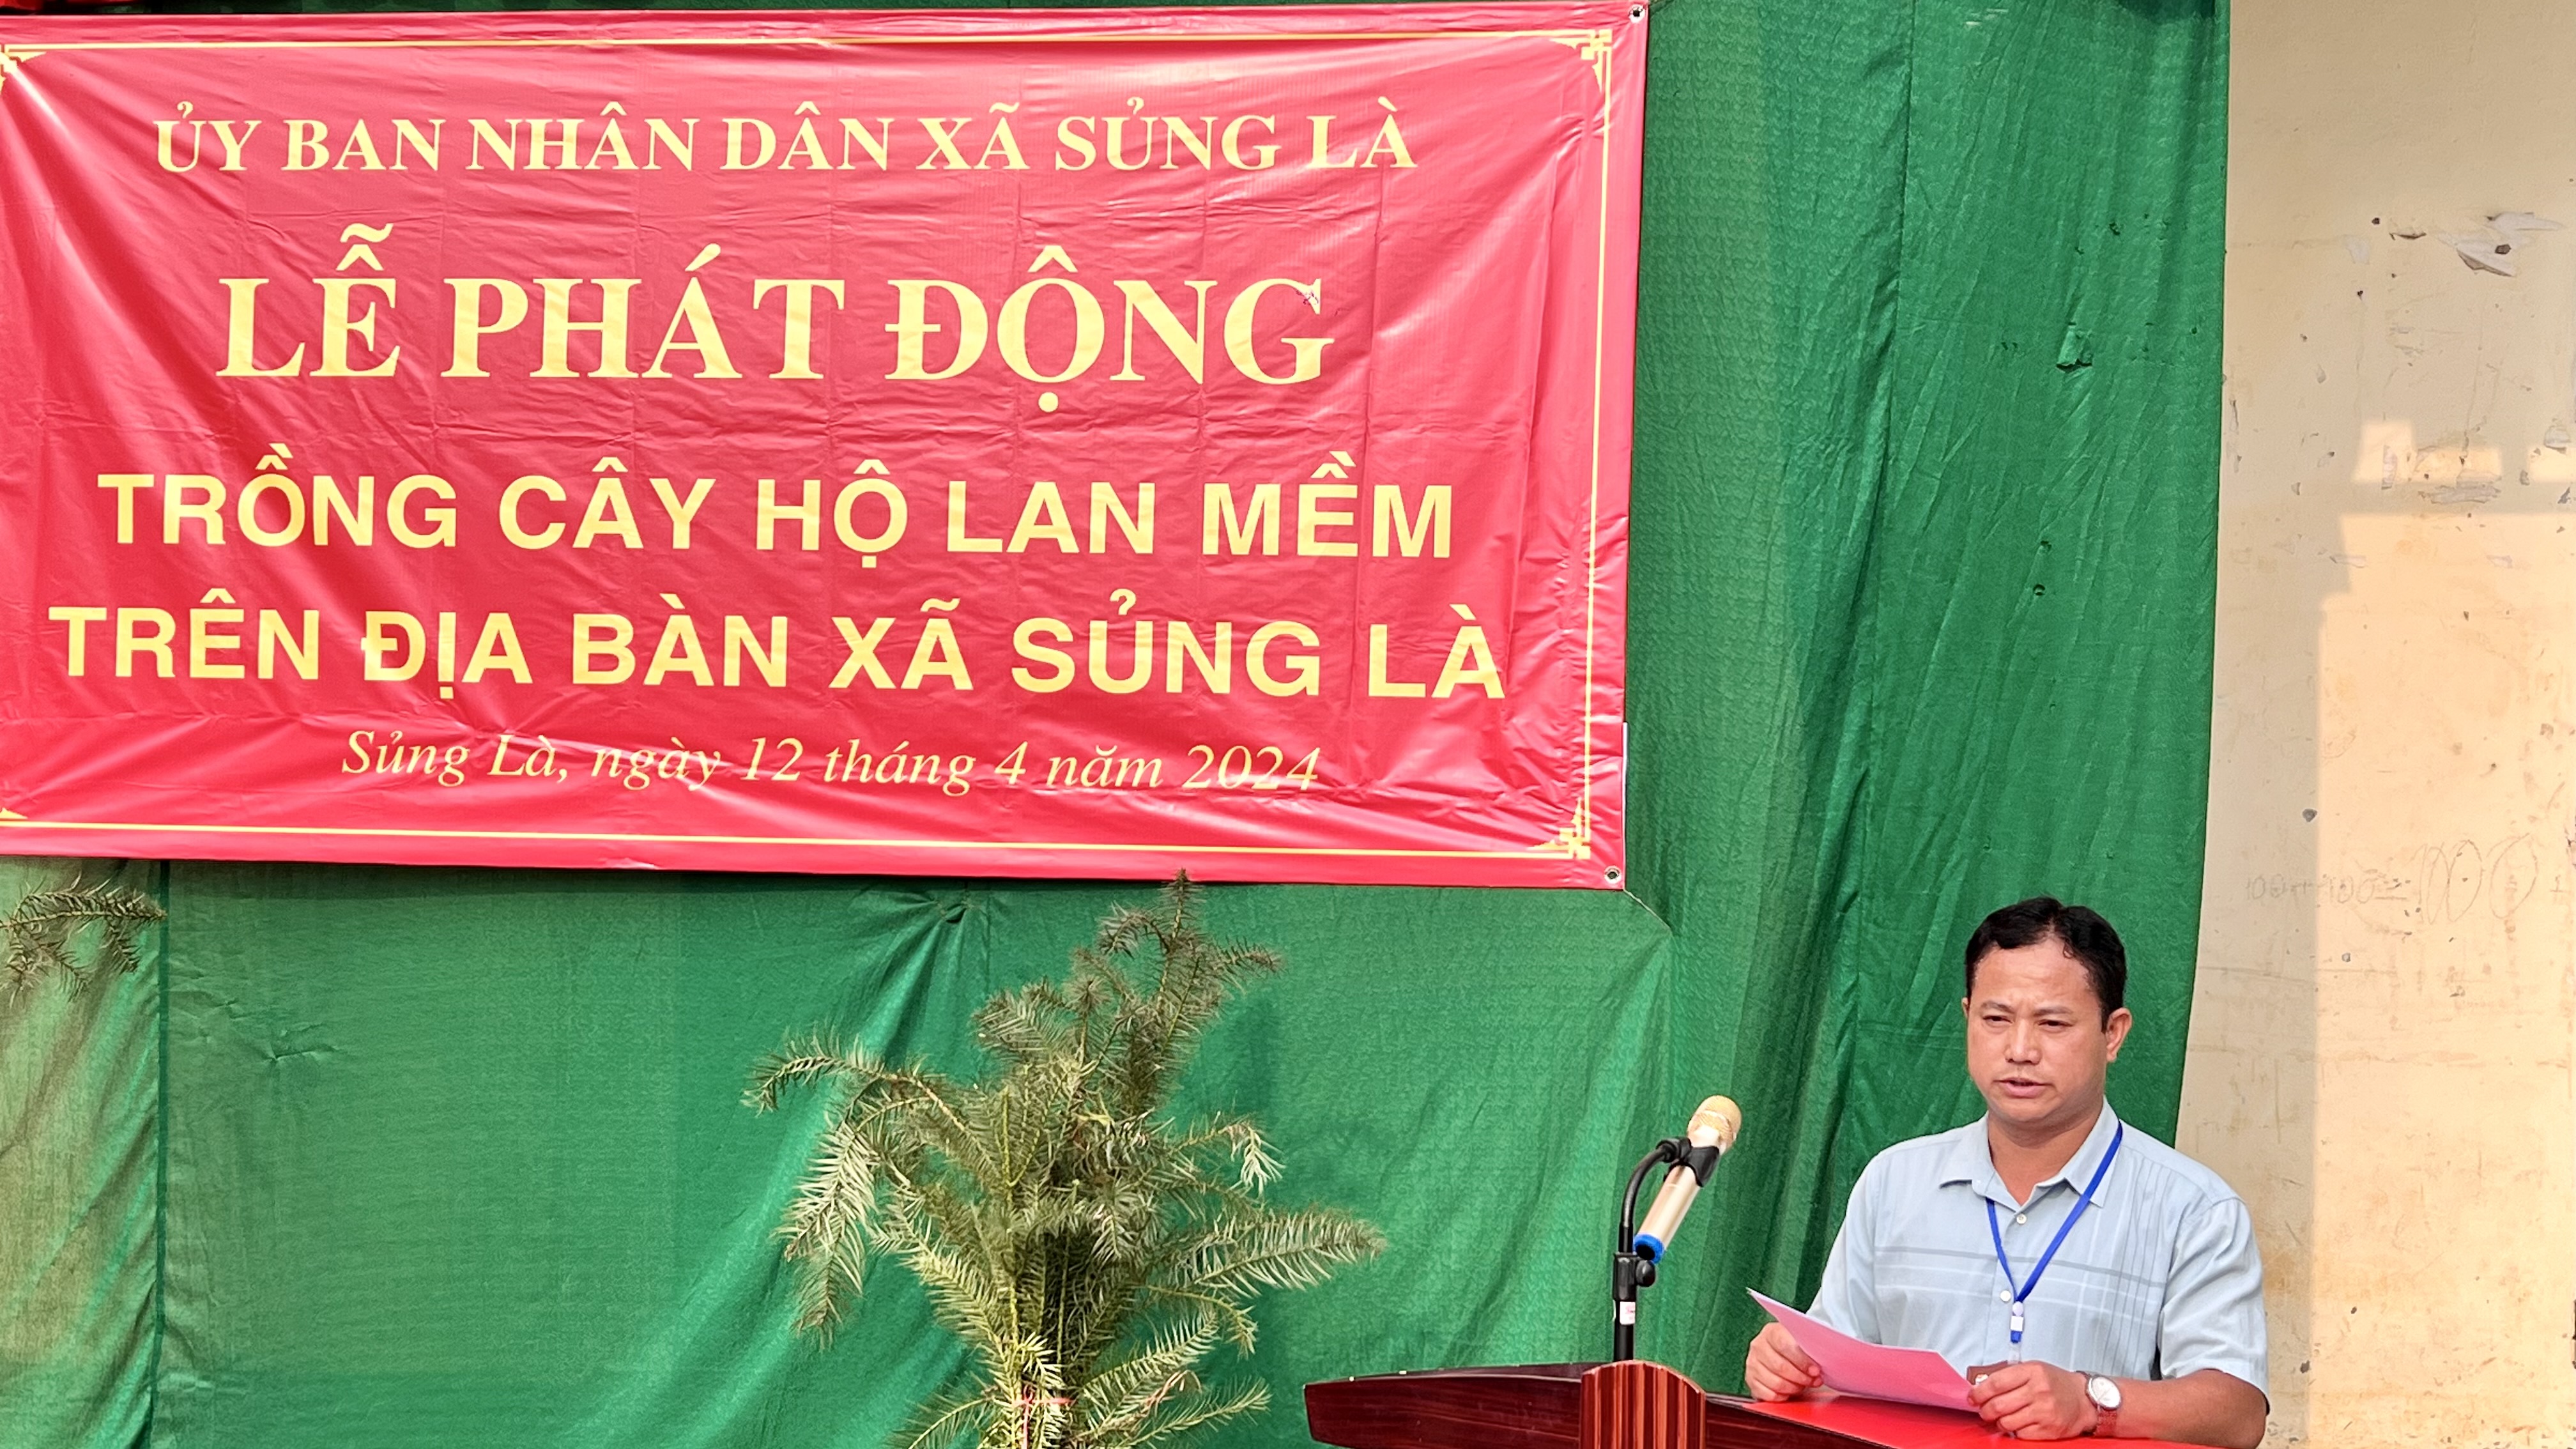 Huyện Đồng Văn, tổ chức phát động trồng cây hộ lan mềm tại xã Sủng Là